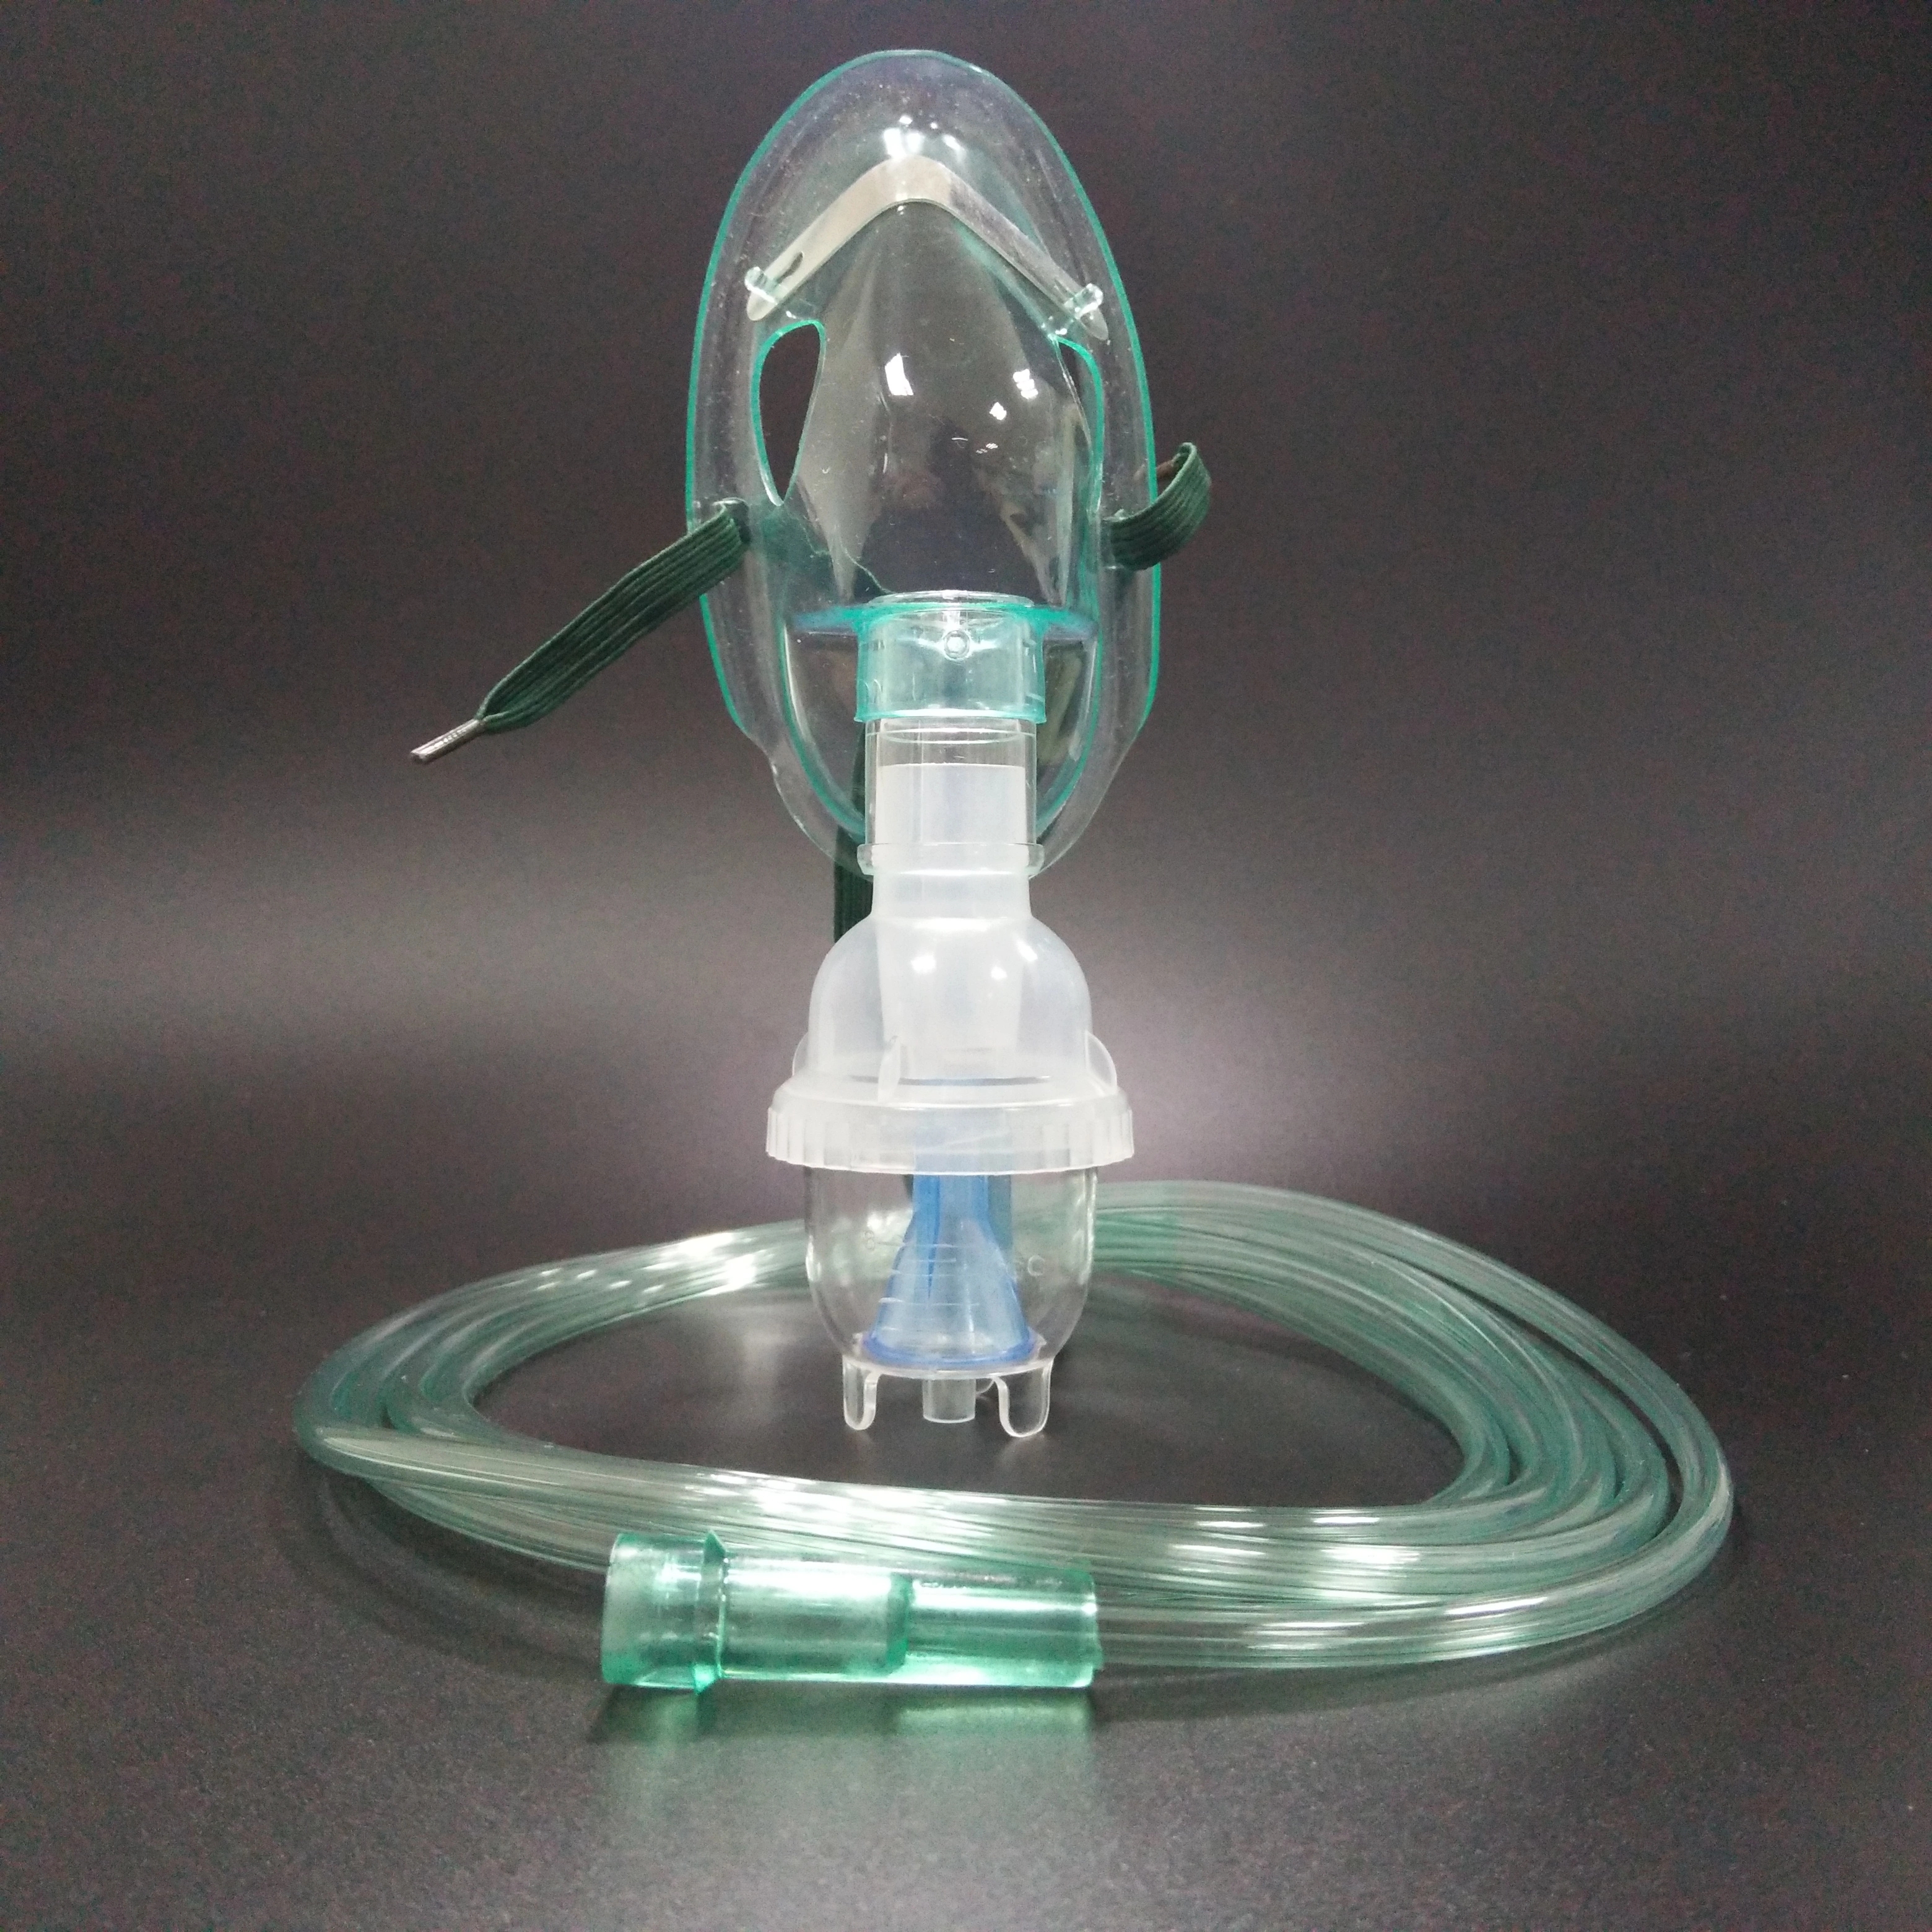 Màscara nebulitzadora d'un sol ús amb tub d'oxigen